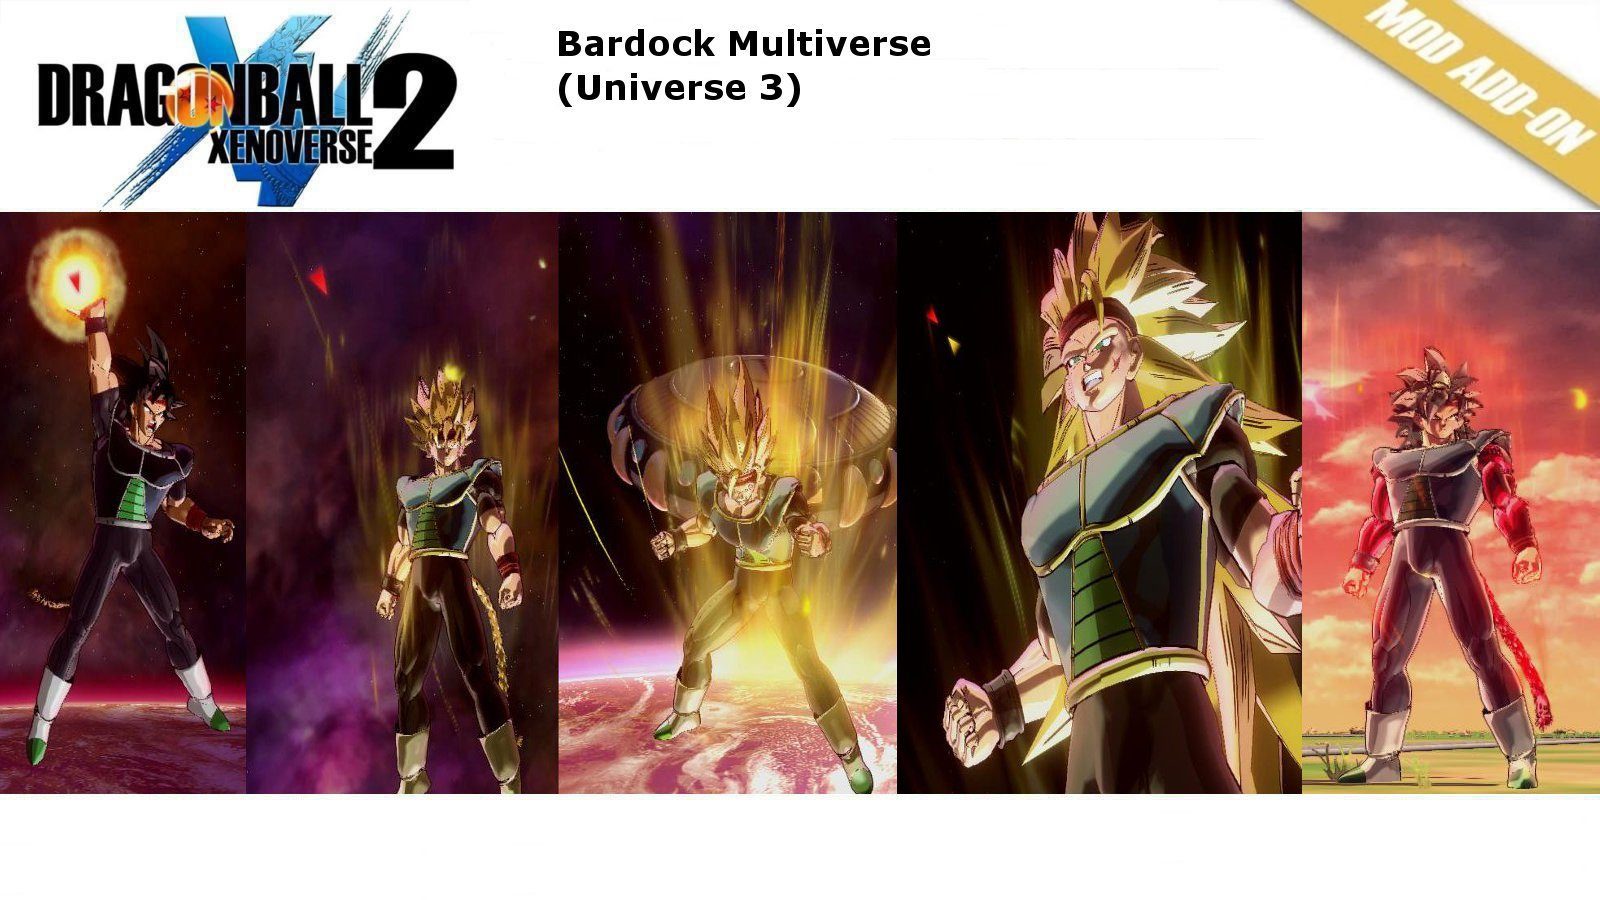 Bardock Dragon Ball Multiverse (Universe 3) – Xenoverse Mods